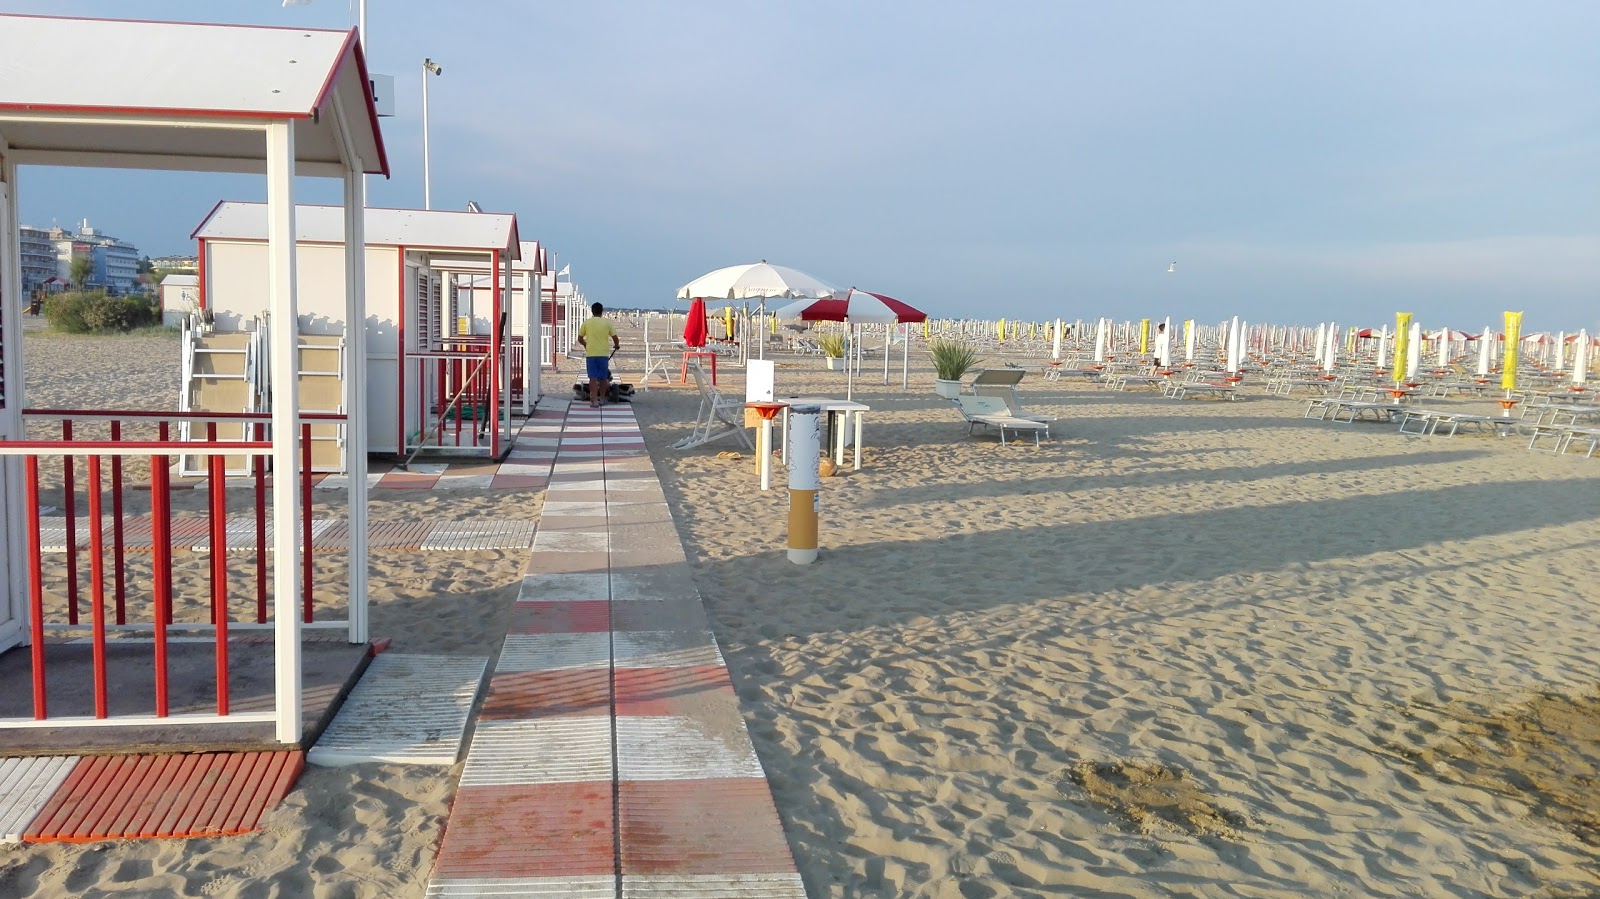 Foto af Spiaggia di Levante - populært sted blandt afslapningskendere